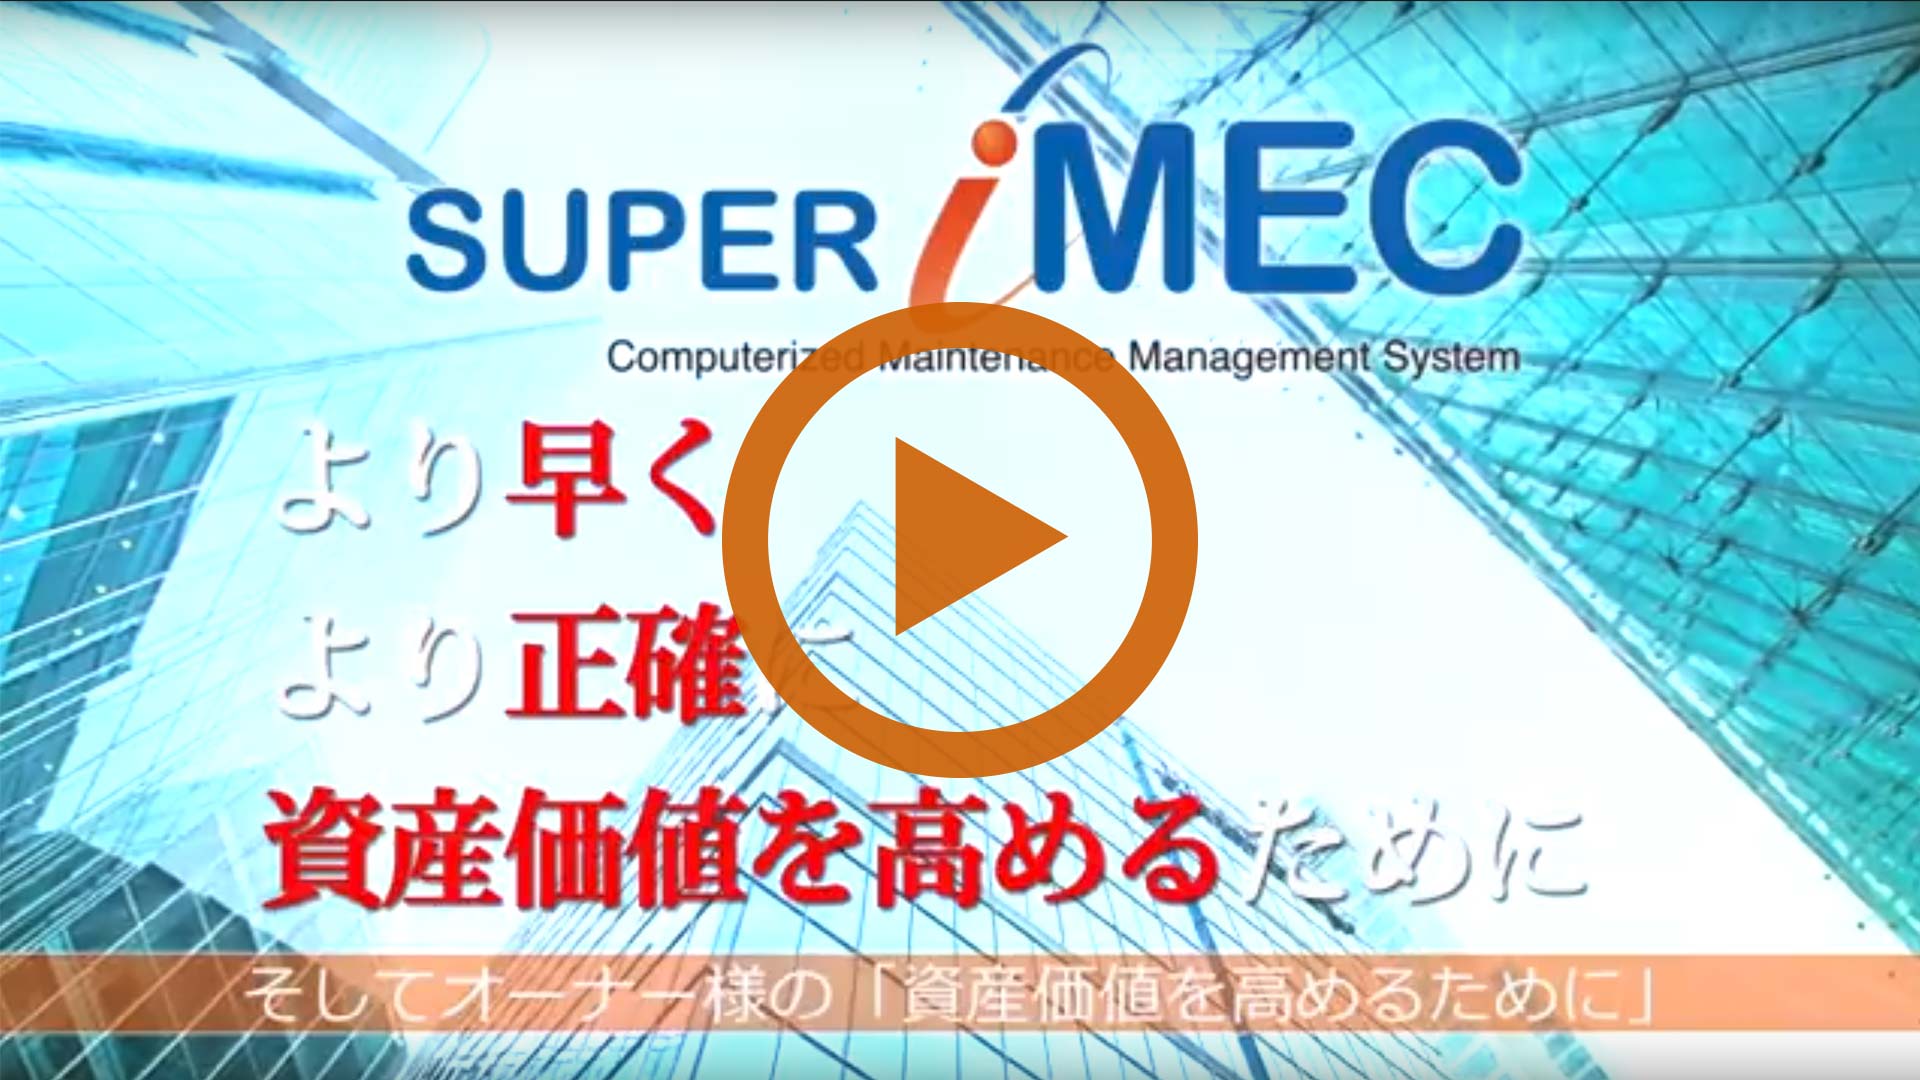 SUPER iMEC